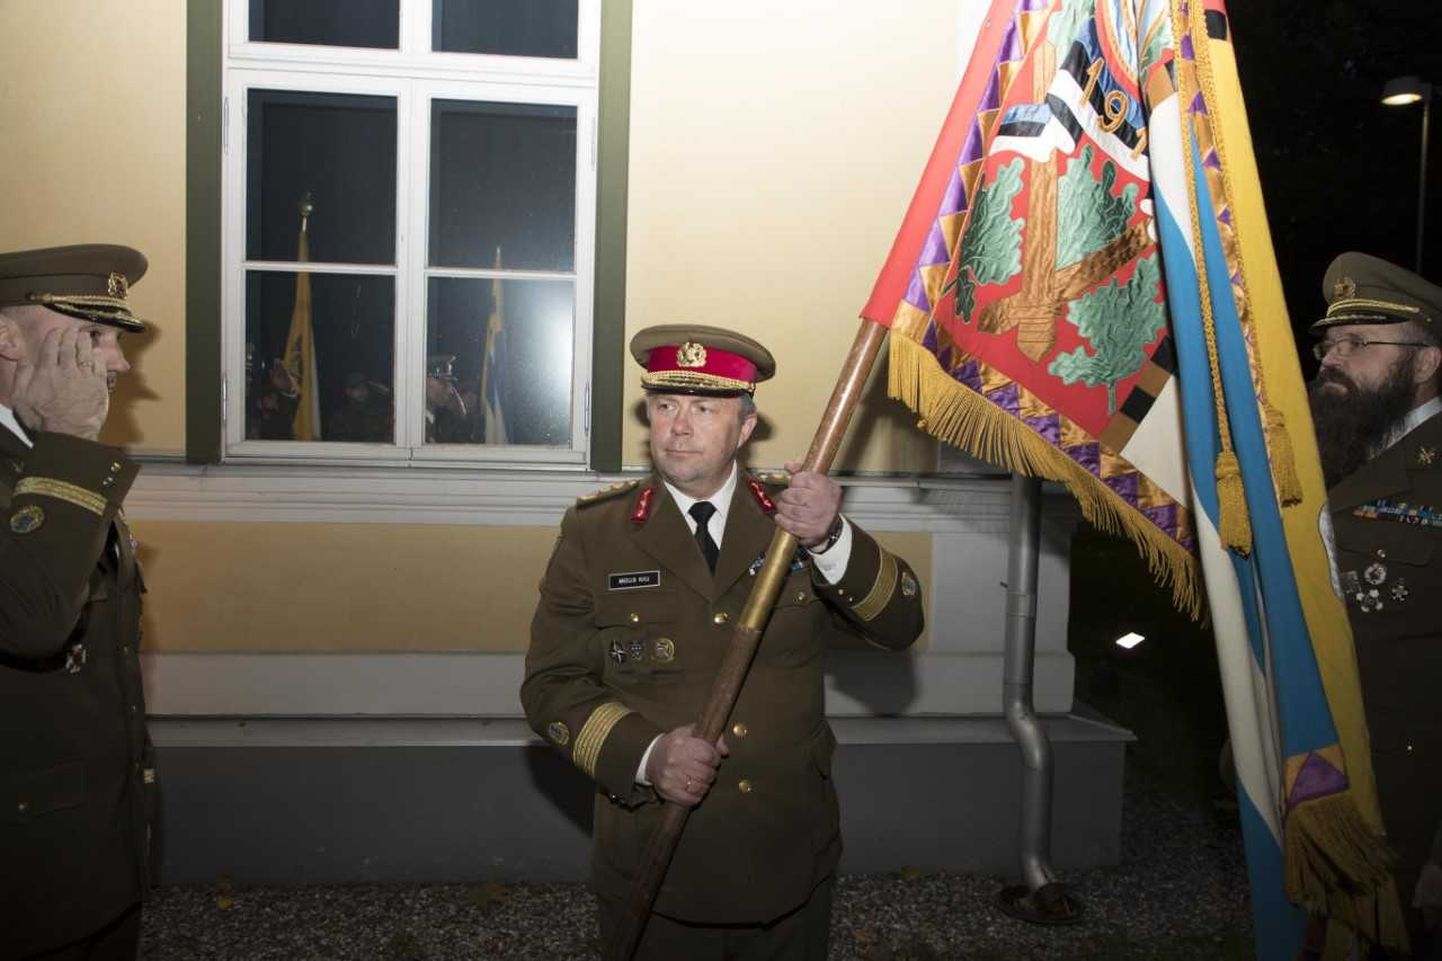 Kaitseliidu ülem kindralmajor Meelis Kiili annab kolonelleitnant Toomas Välilt saadud Tallinna maleva lipu üle kolonelleitnant Janno Märkile.